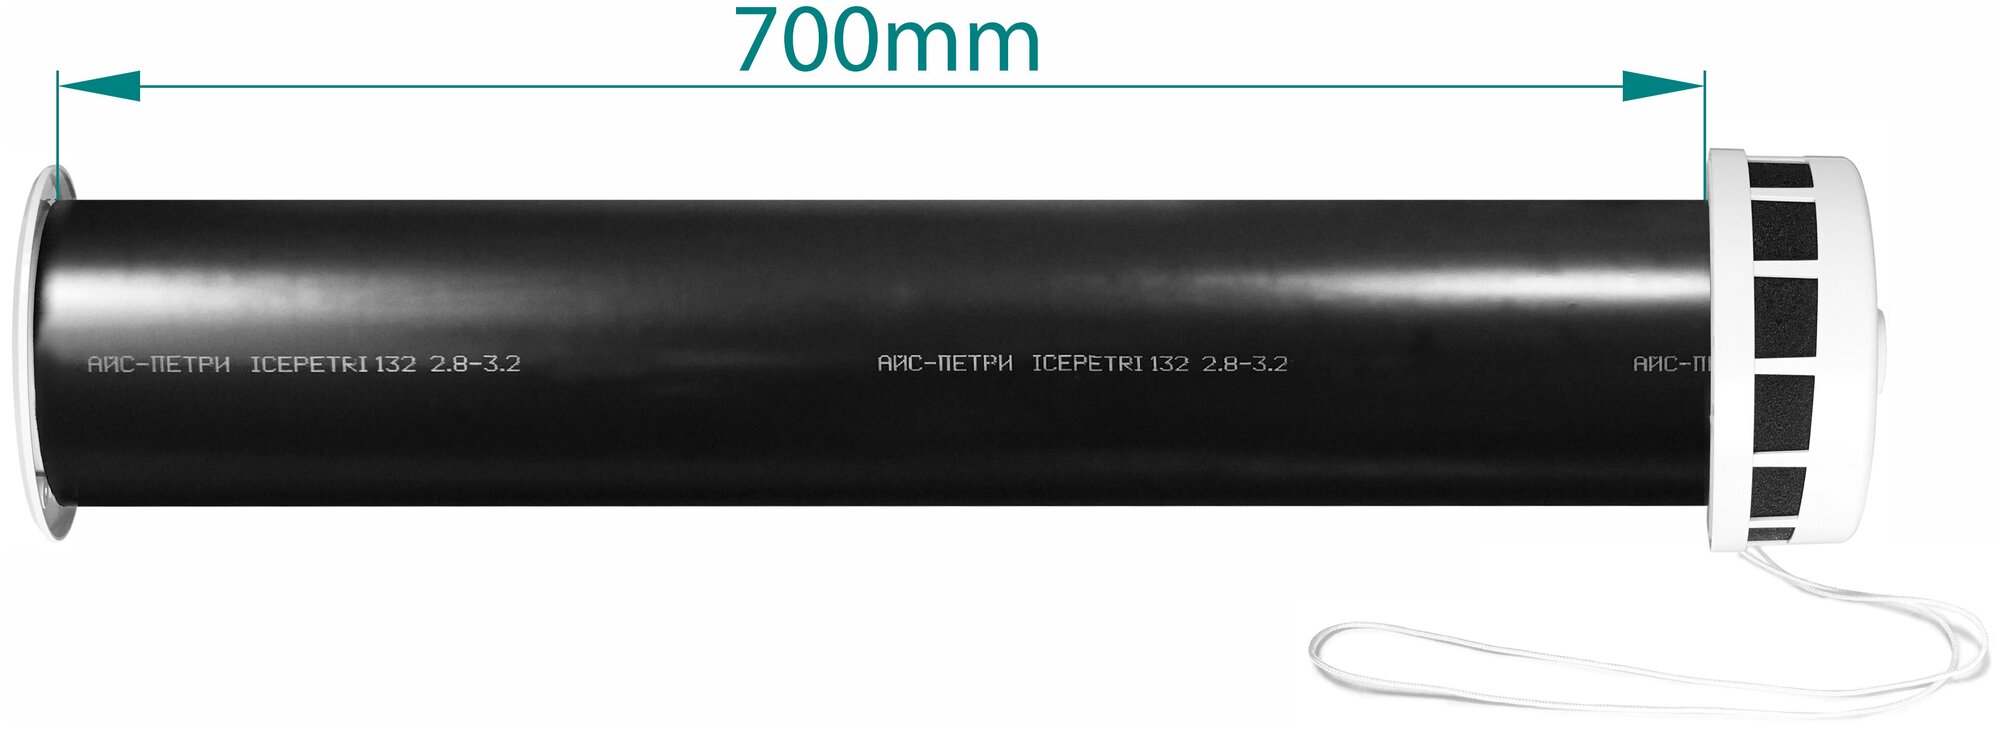 Приточный клапан КИВ-125 icepetri 700мм с ППУ и алюминиевой решеткой - фотография № 2